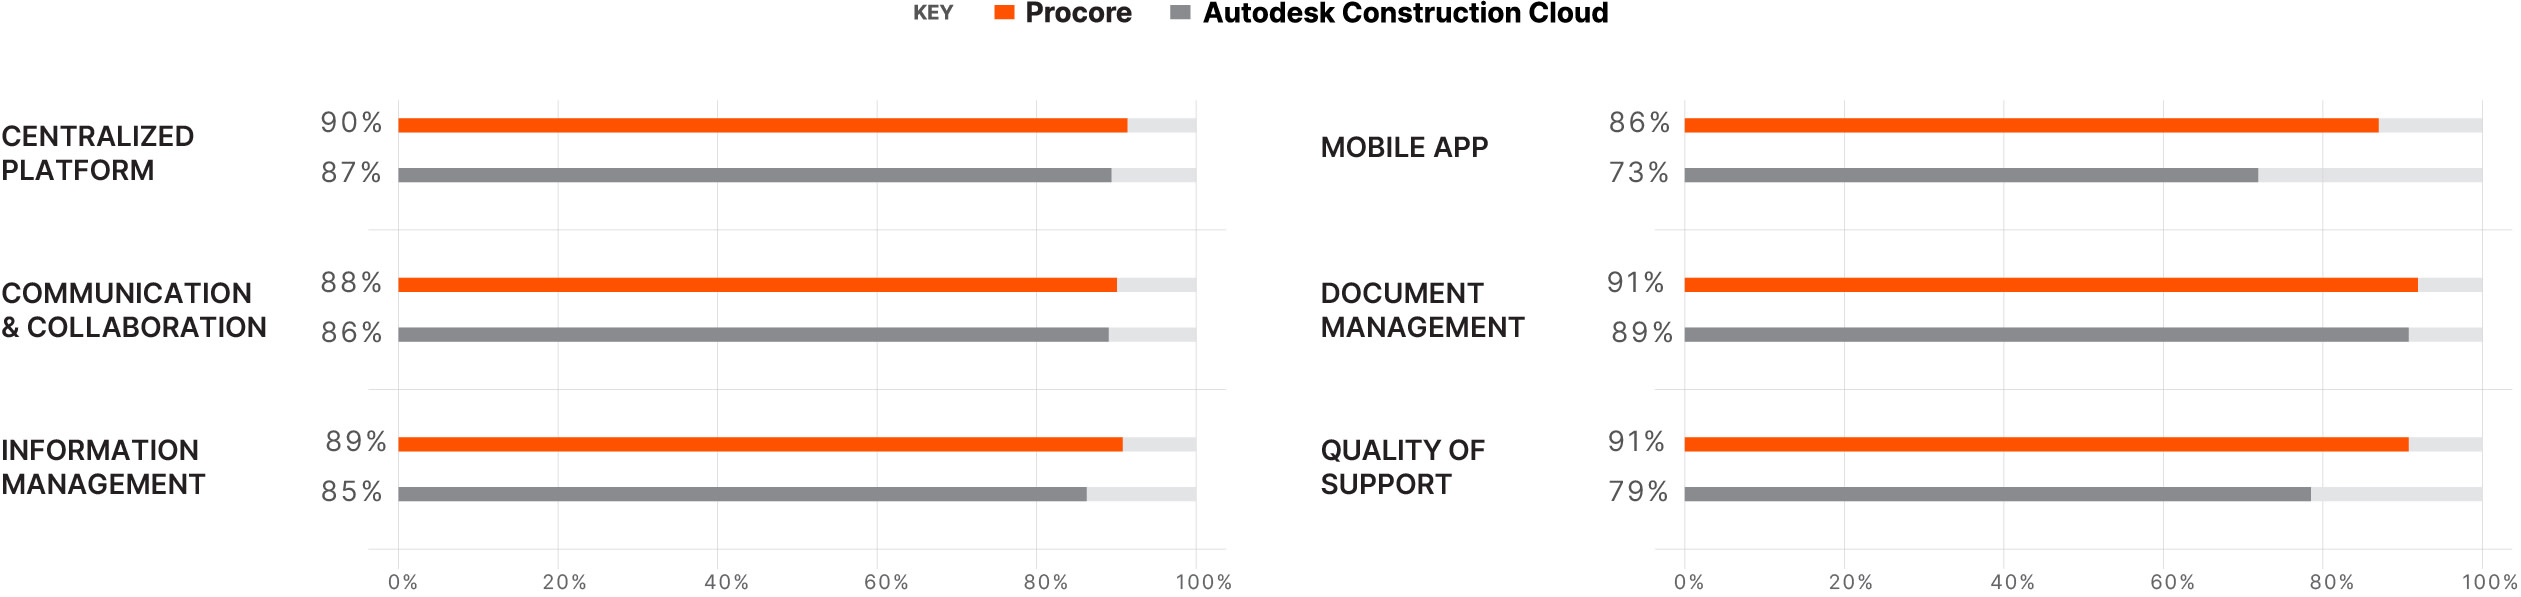 Procore vs Autodesk comparison chart